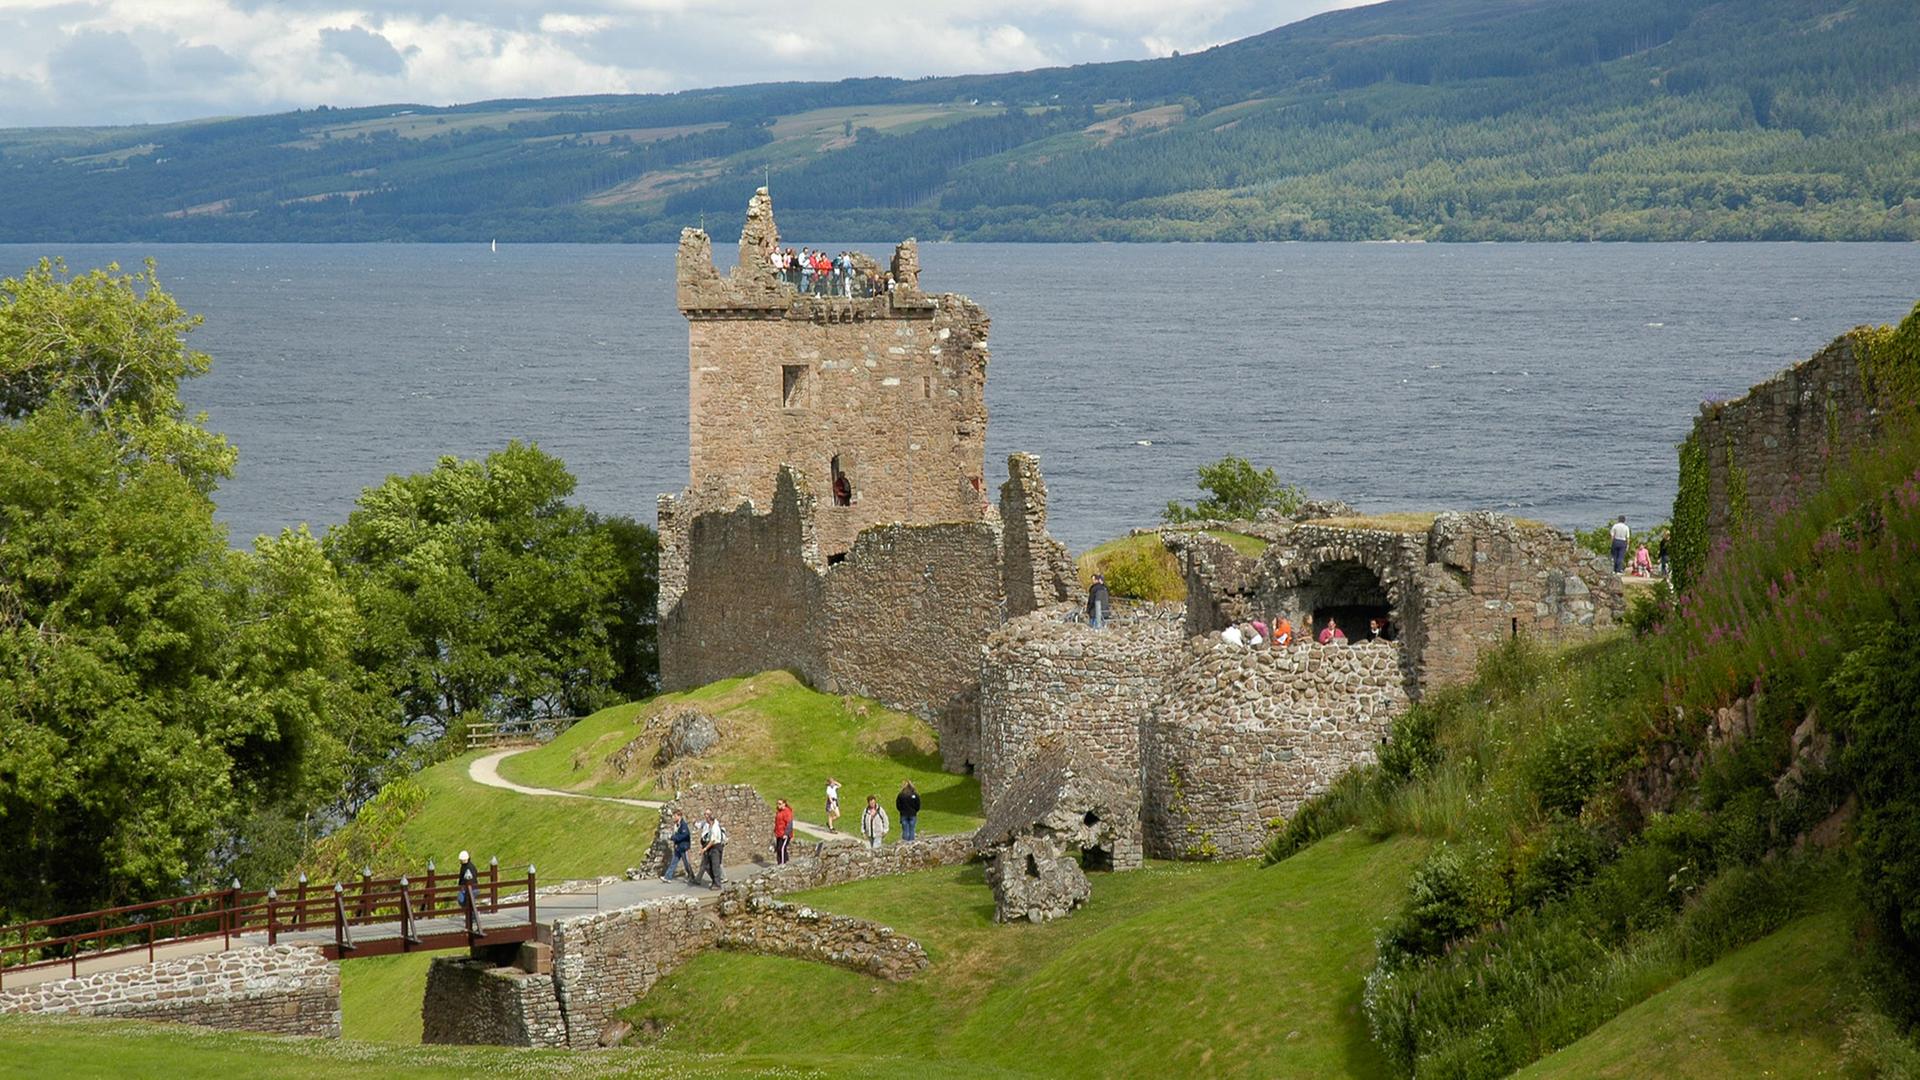 Blick auf die Ruine des Urquhart Castle am Loch Ness in den Schottischen Highlands